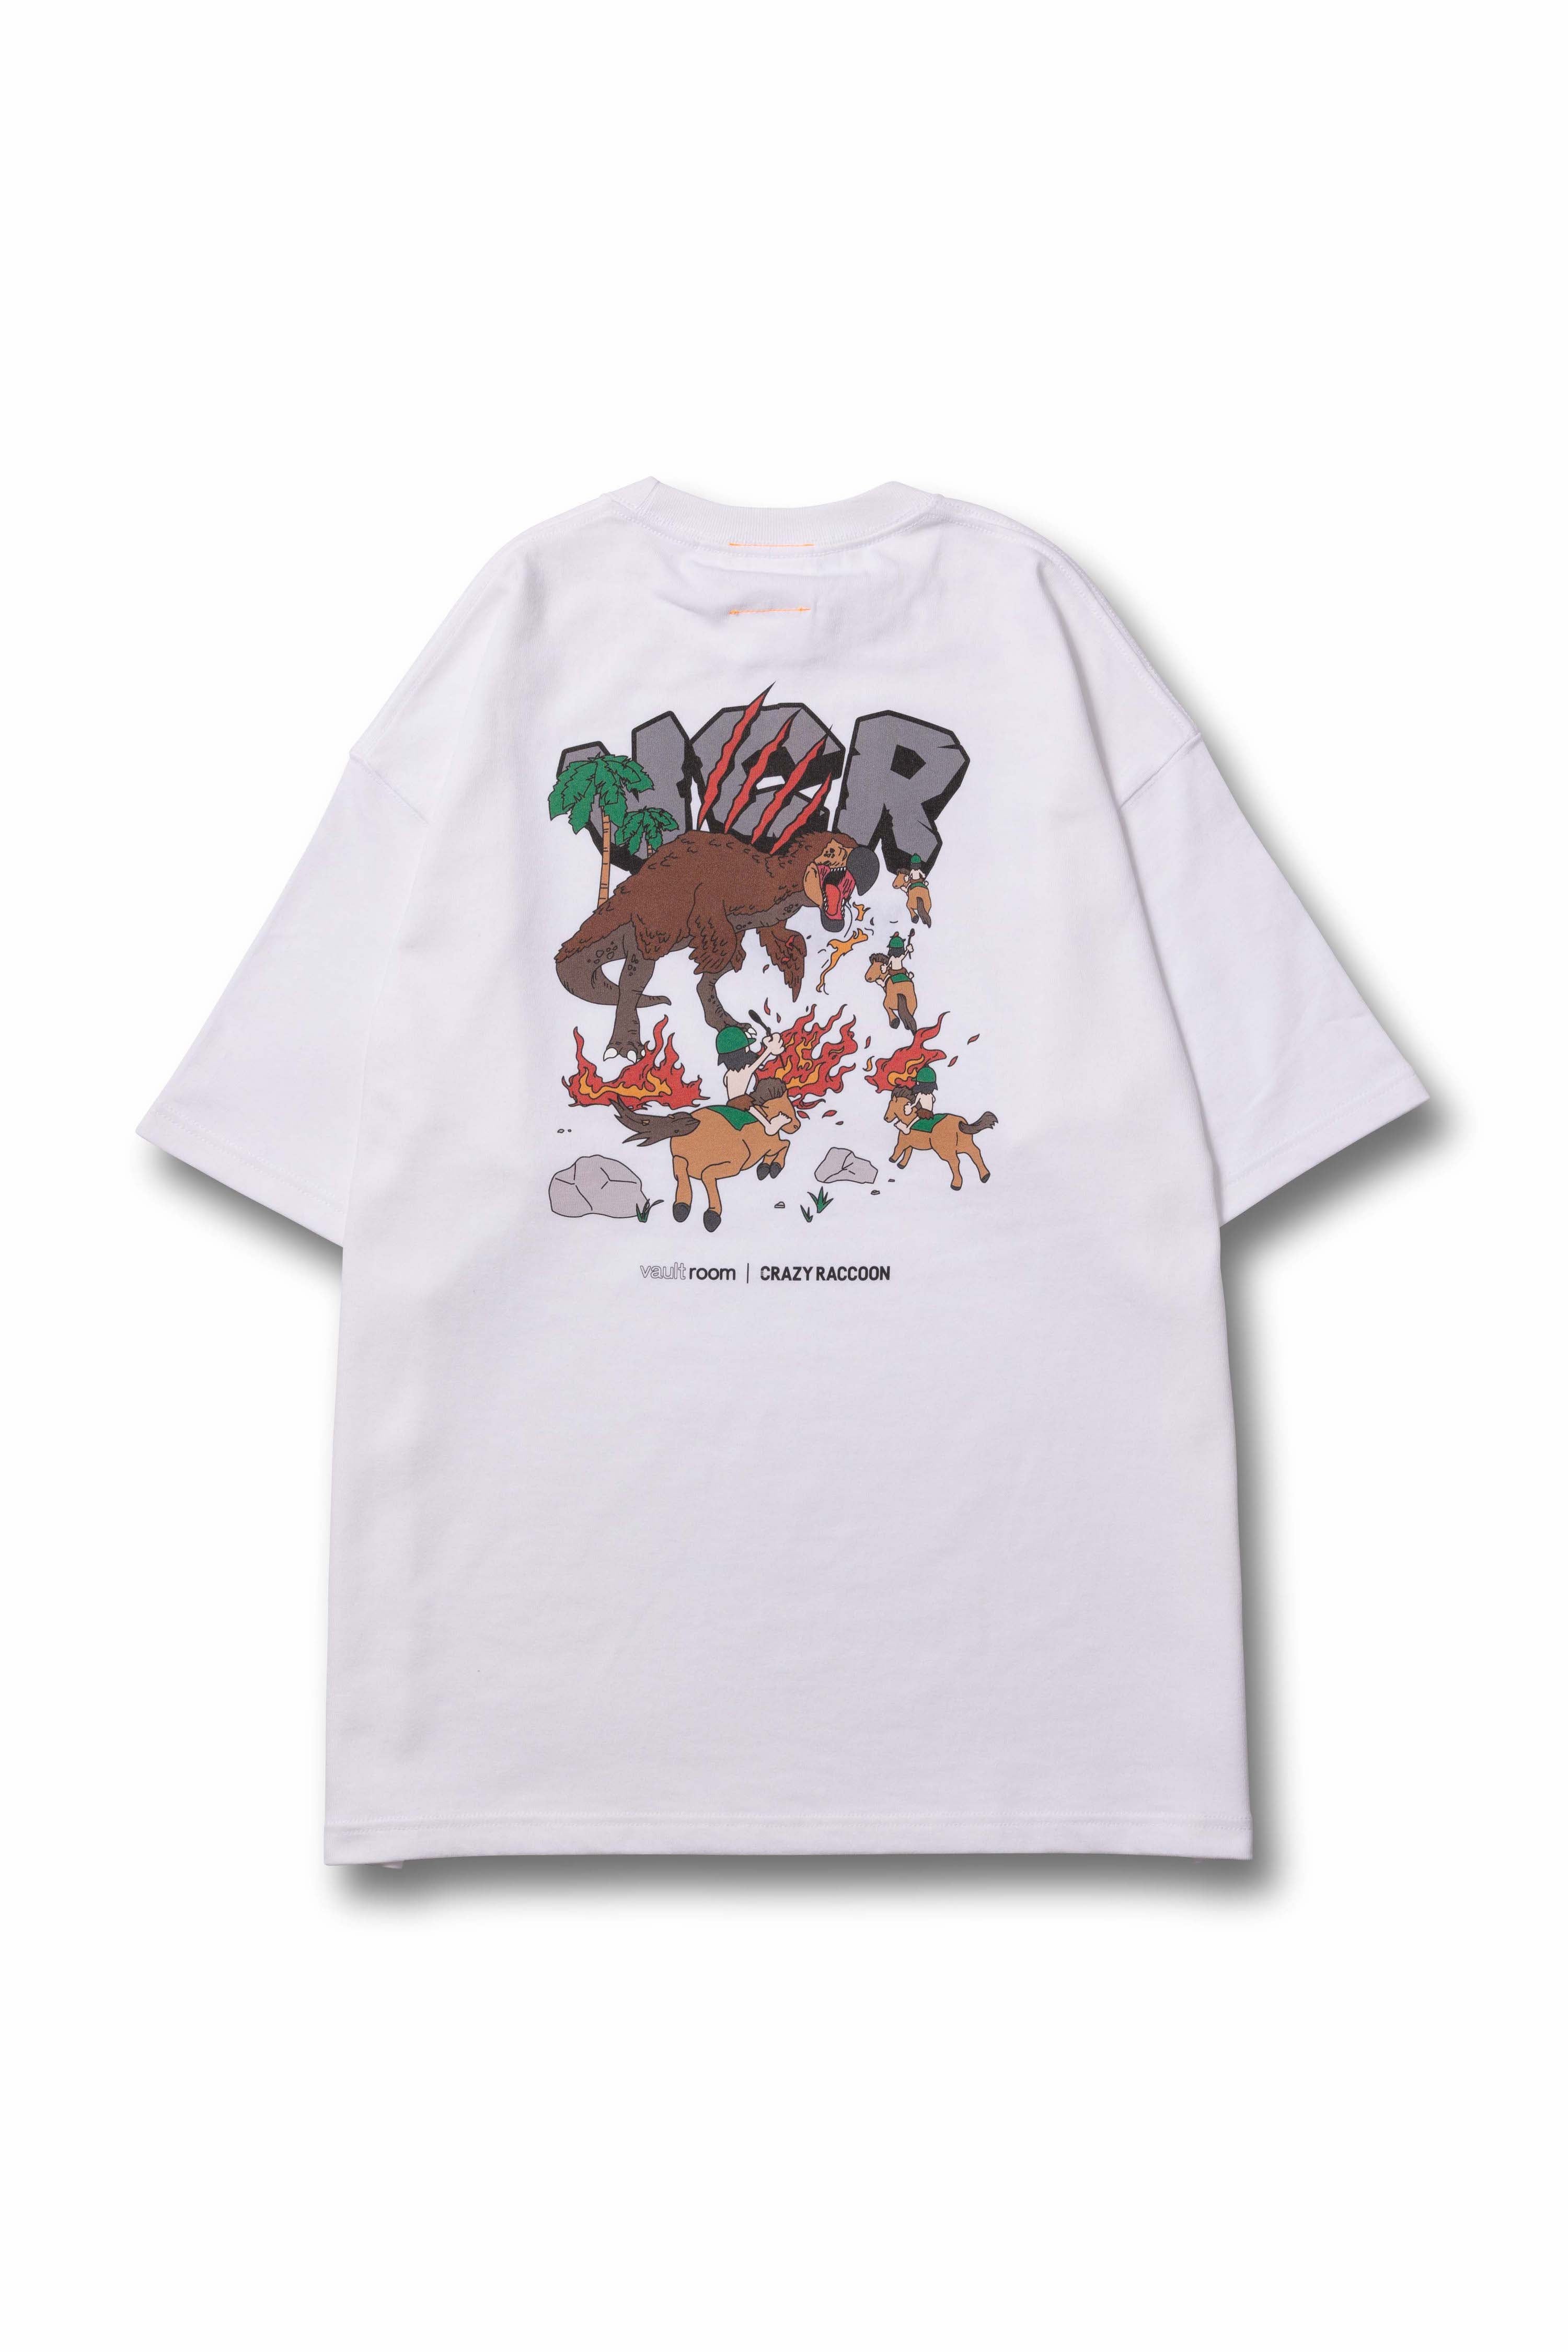 日本で買 vaultroom TORORO コラボTシャツ - トップス